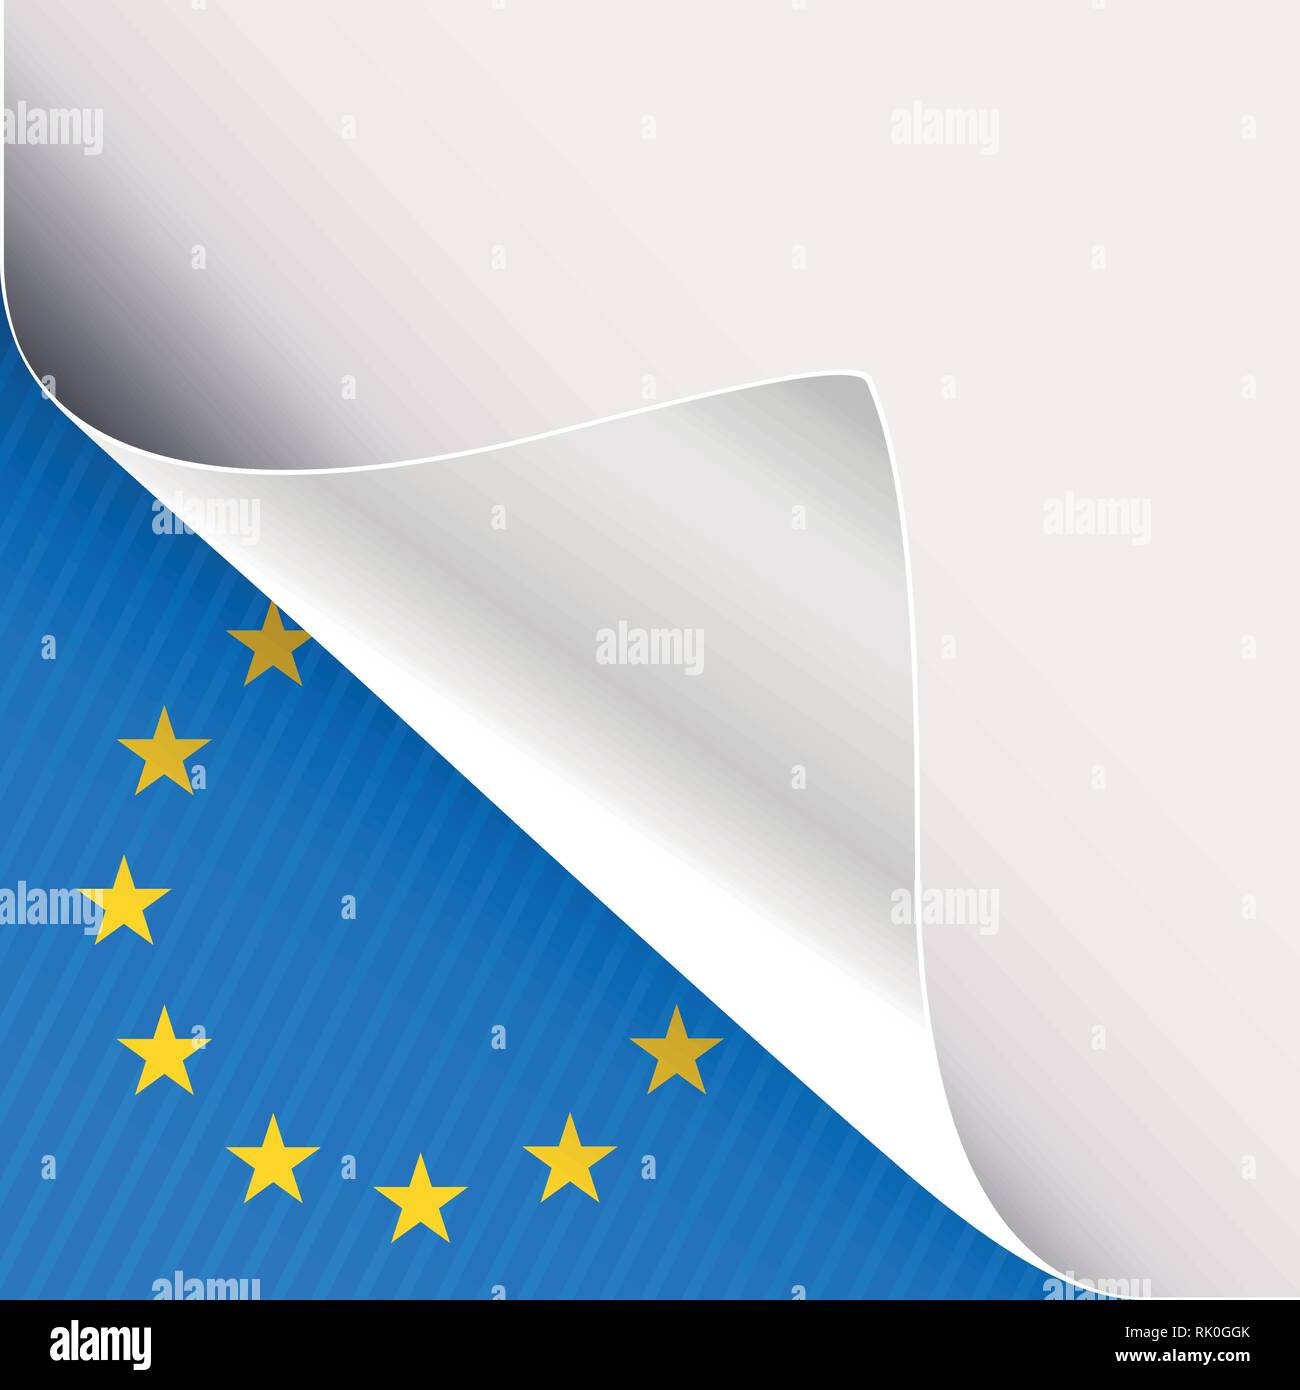 Angolo arricciato del libro bianco su sfondo blu in basso a sinistra sullo sfondo angolare con unione europea segno. Illustrazione Vettoriale. Illustrazione Vettoriale